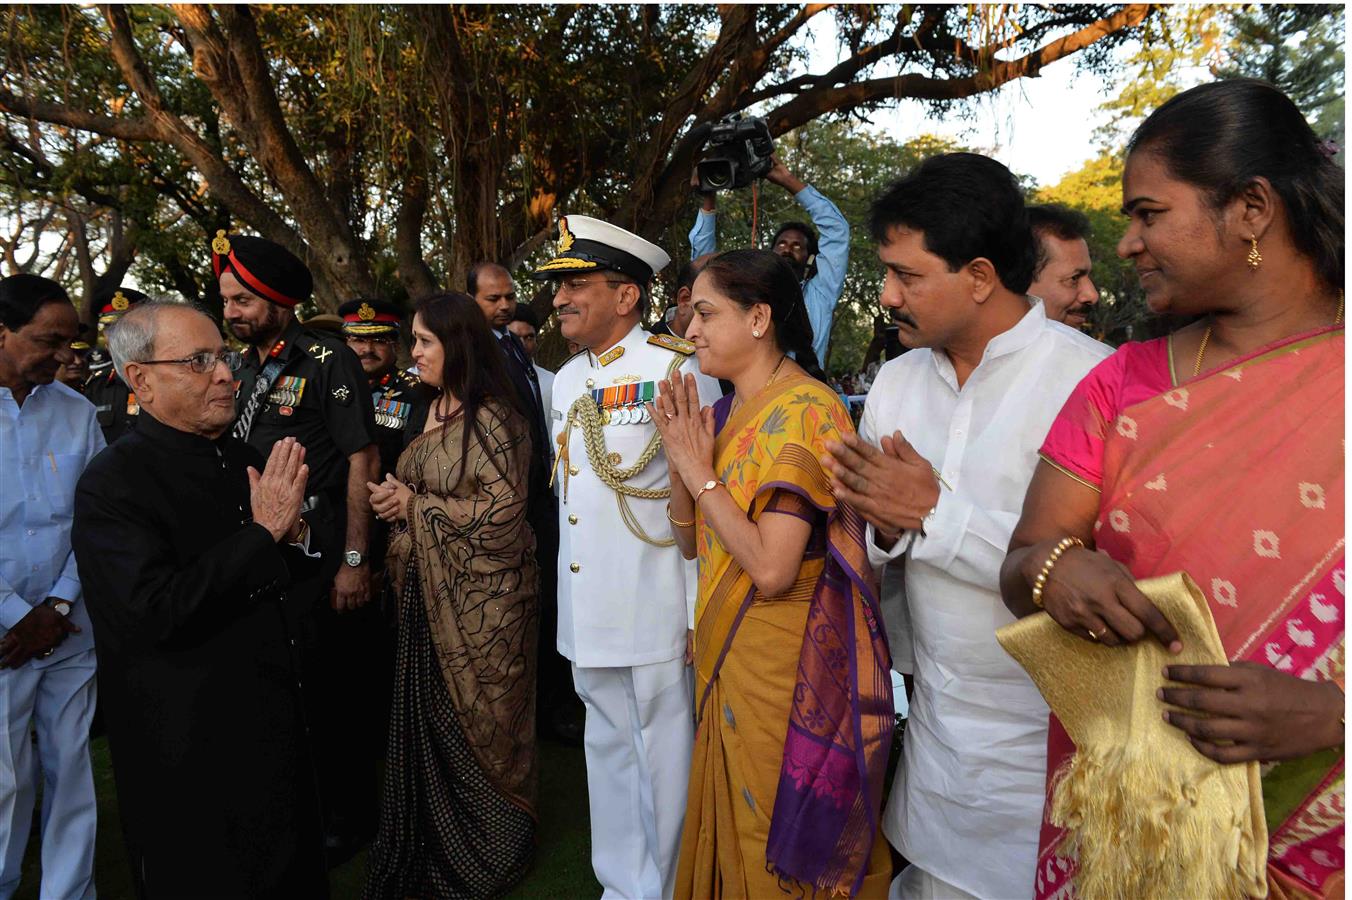 भारत के राष्ट्रपति, श्री प्रणब मुखर्जी ने 30 दिसंबर, 2015 को, बोलारम, सिकंदराबाद में राष्ट्रपति निलयम में ‘एट होम’ समारोह का आयोजन किया